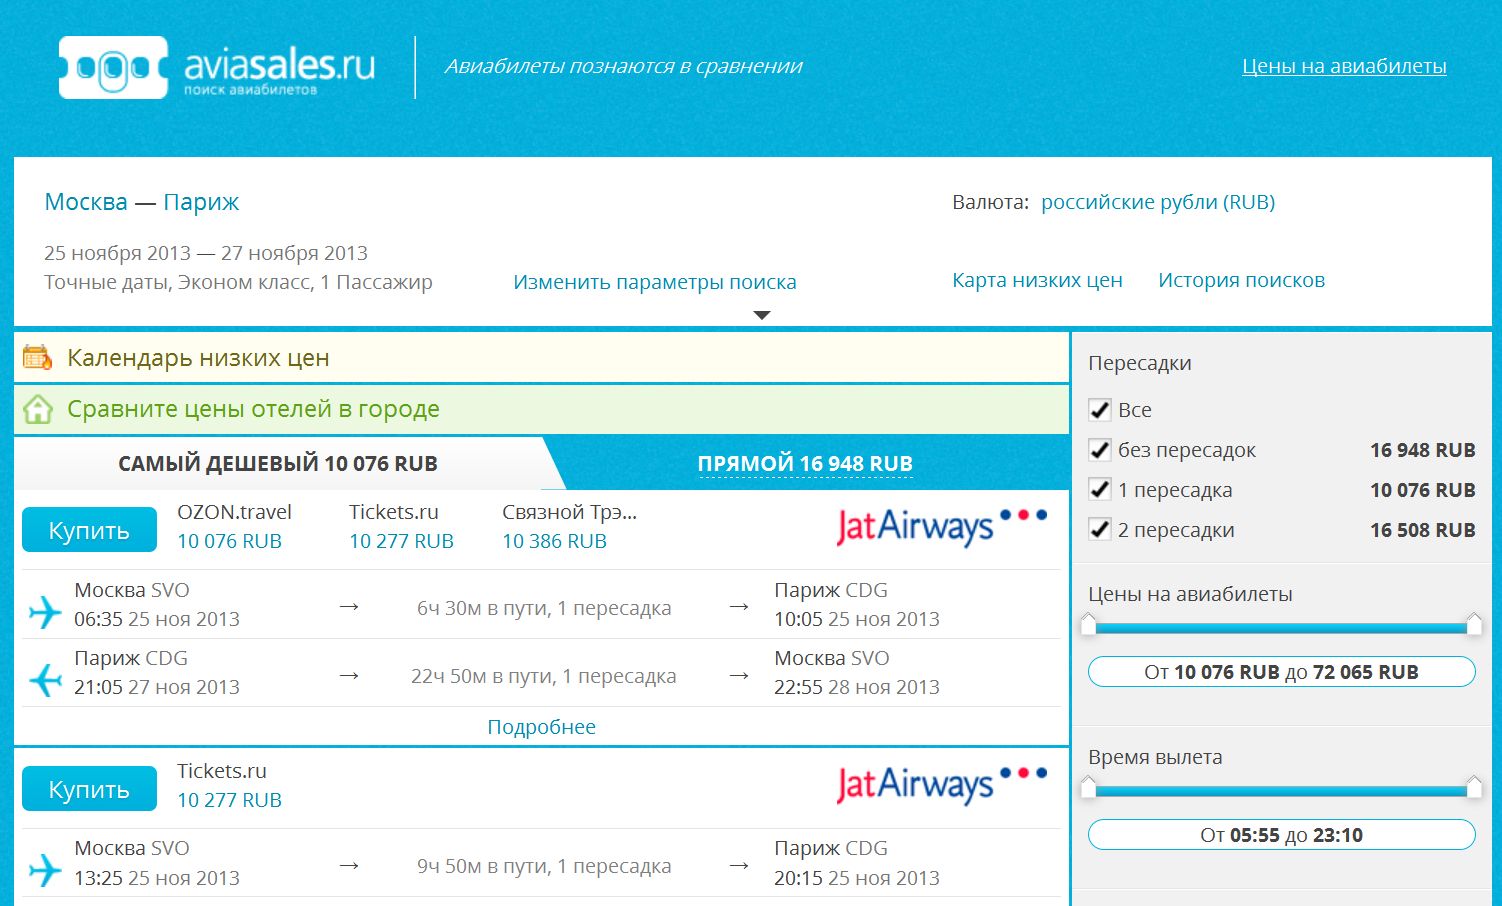 Сайты выгодных цен на авиабилеты билет на самолет спб дагестан